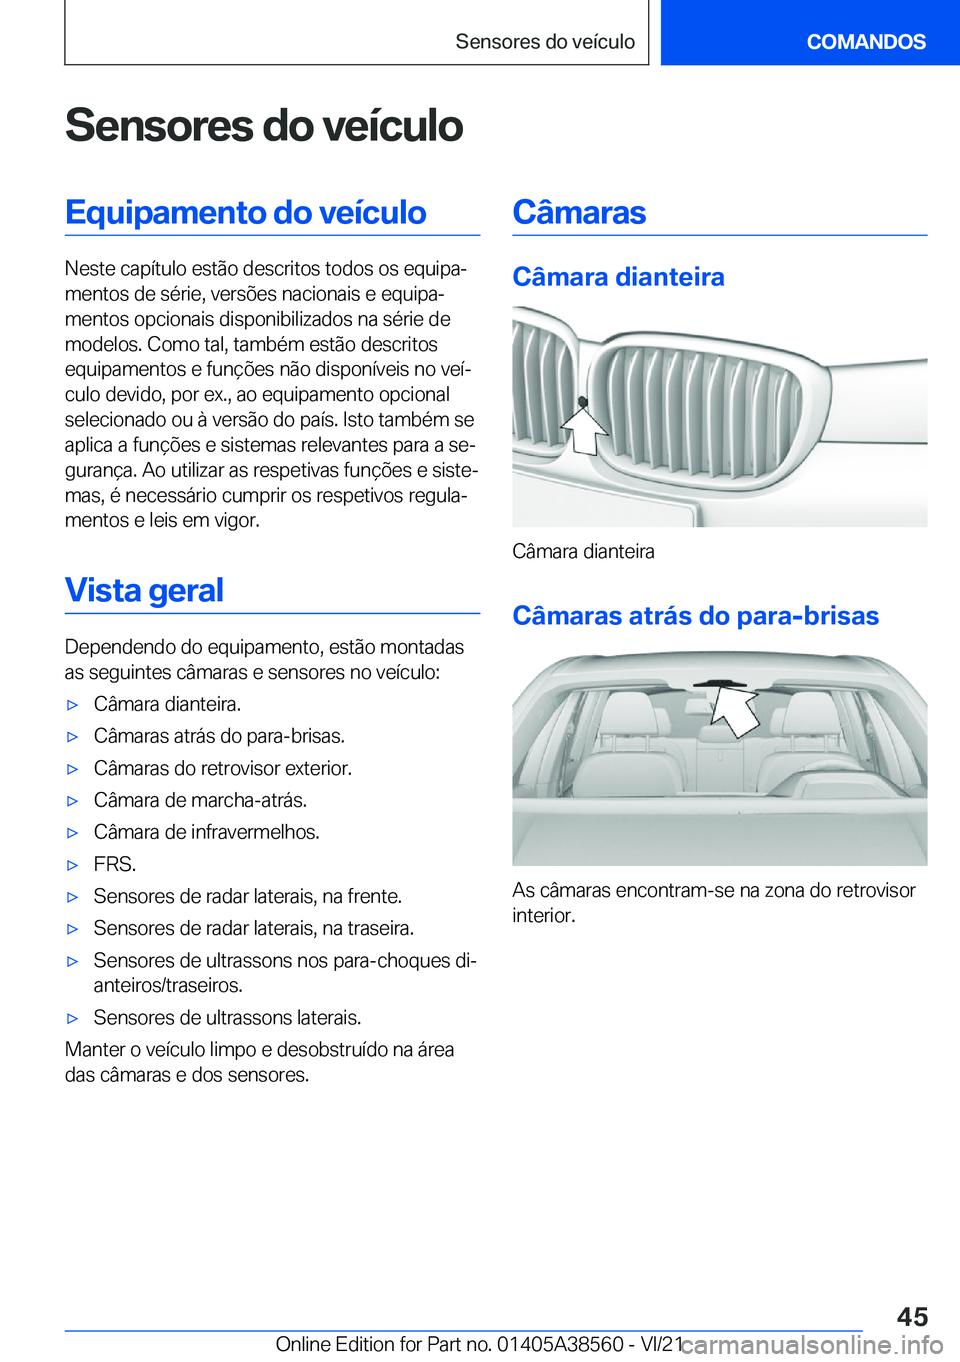 BMW X6 2022  Manual do condutor (in Portuguese) �S�e�n�s�o�r�e�s��d�o��v�e�